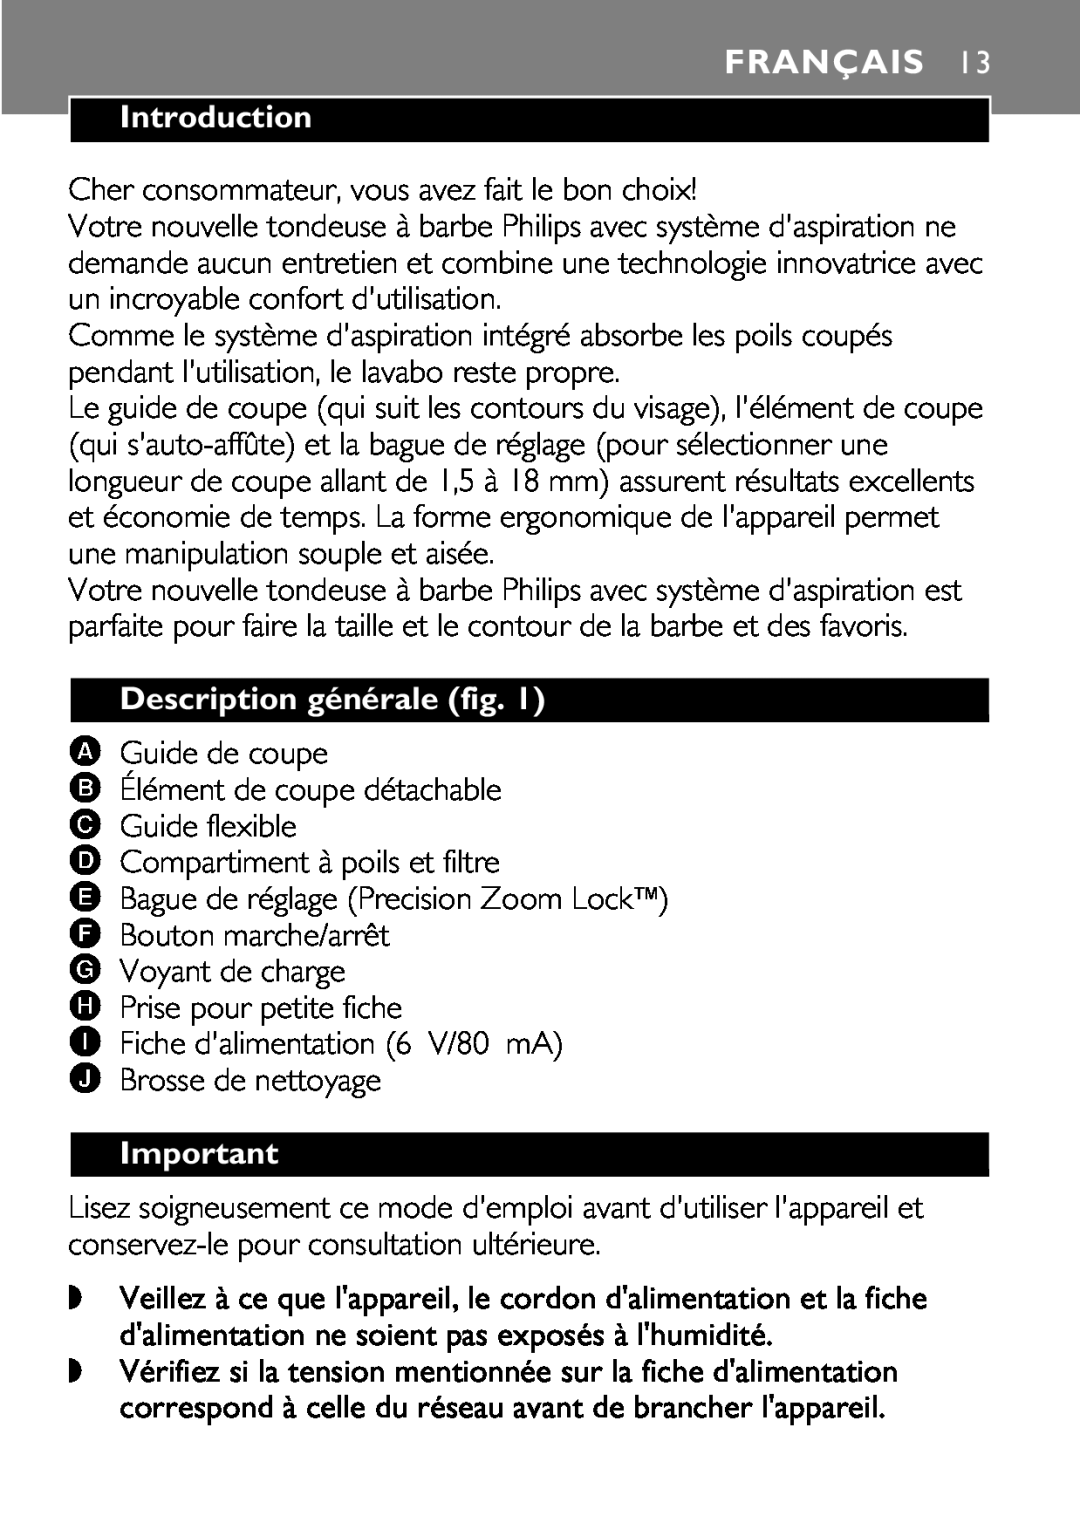 Philips 646-039 manual Français, Description générale fig, Introduction 